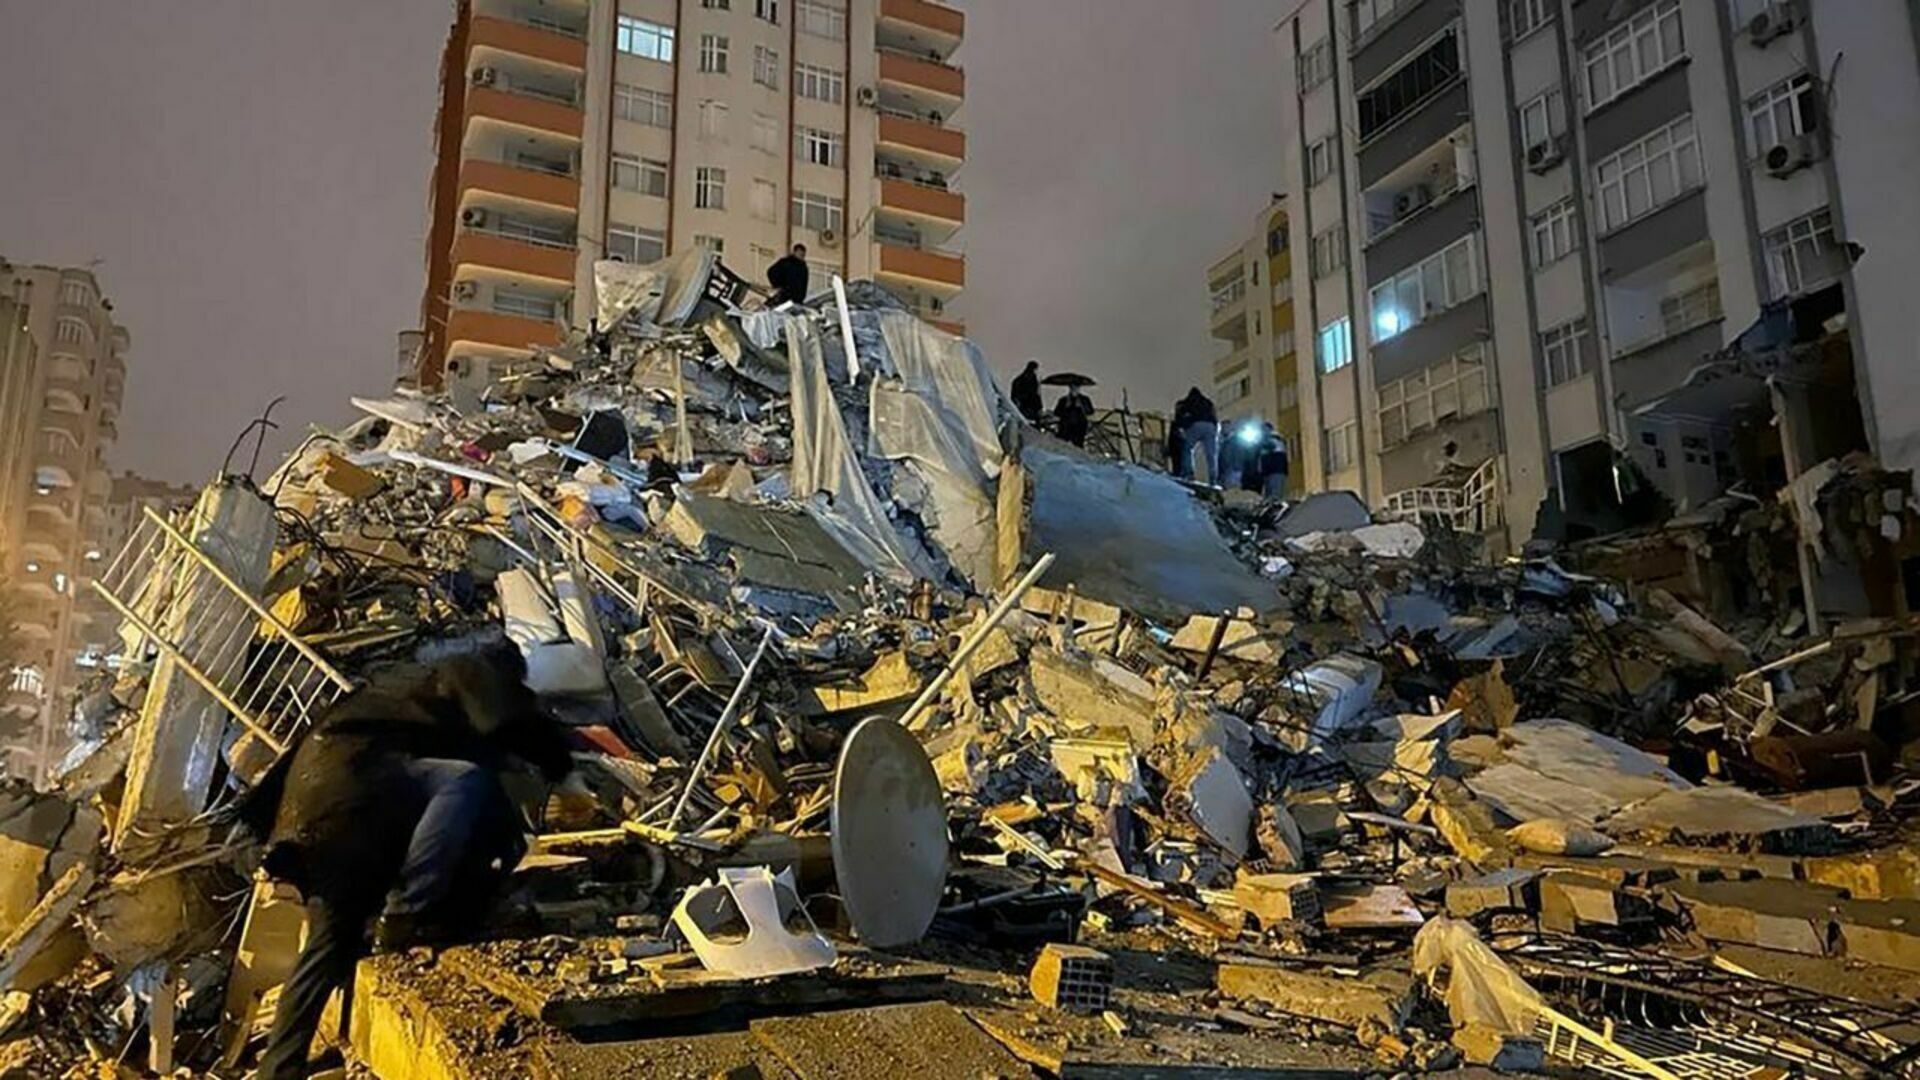 После землетрясения в Турции снесут целый город